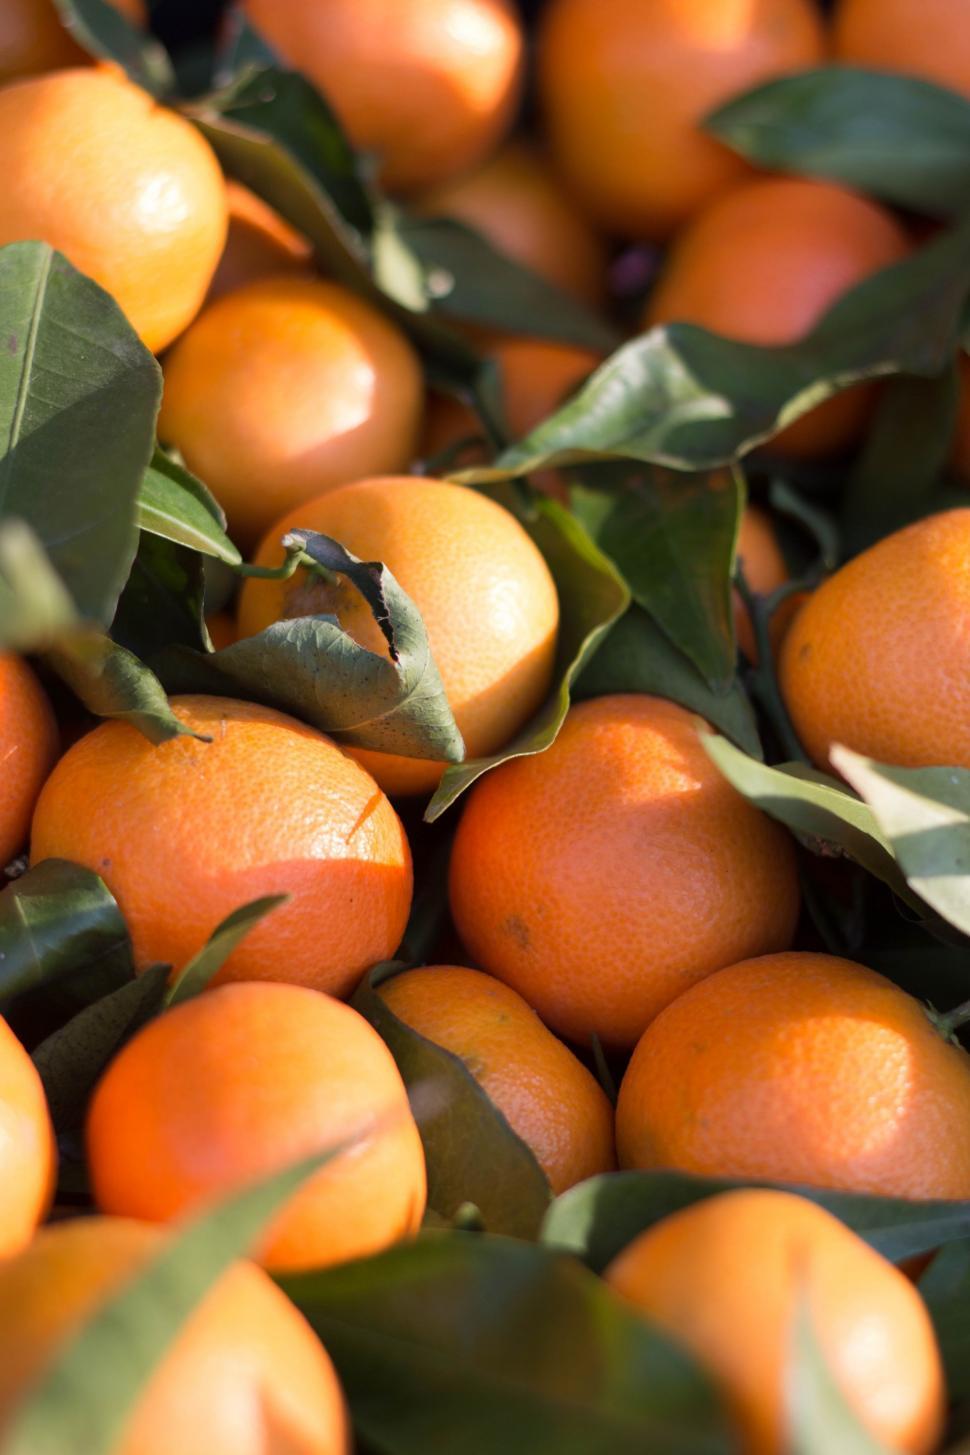 Free Image of Mandarin oranges 